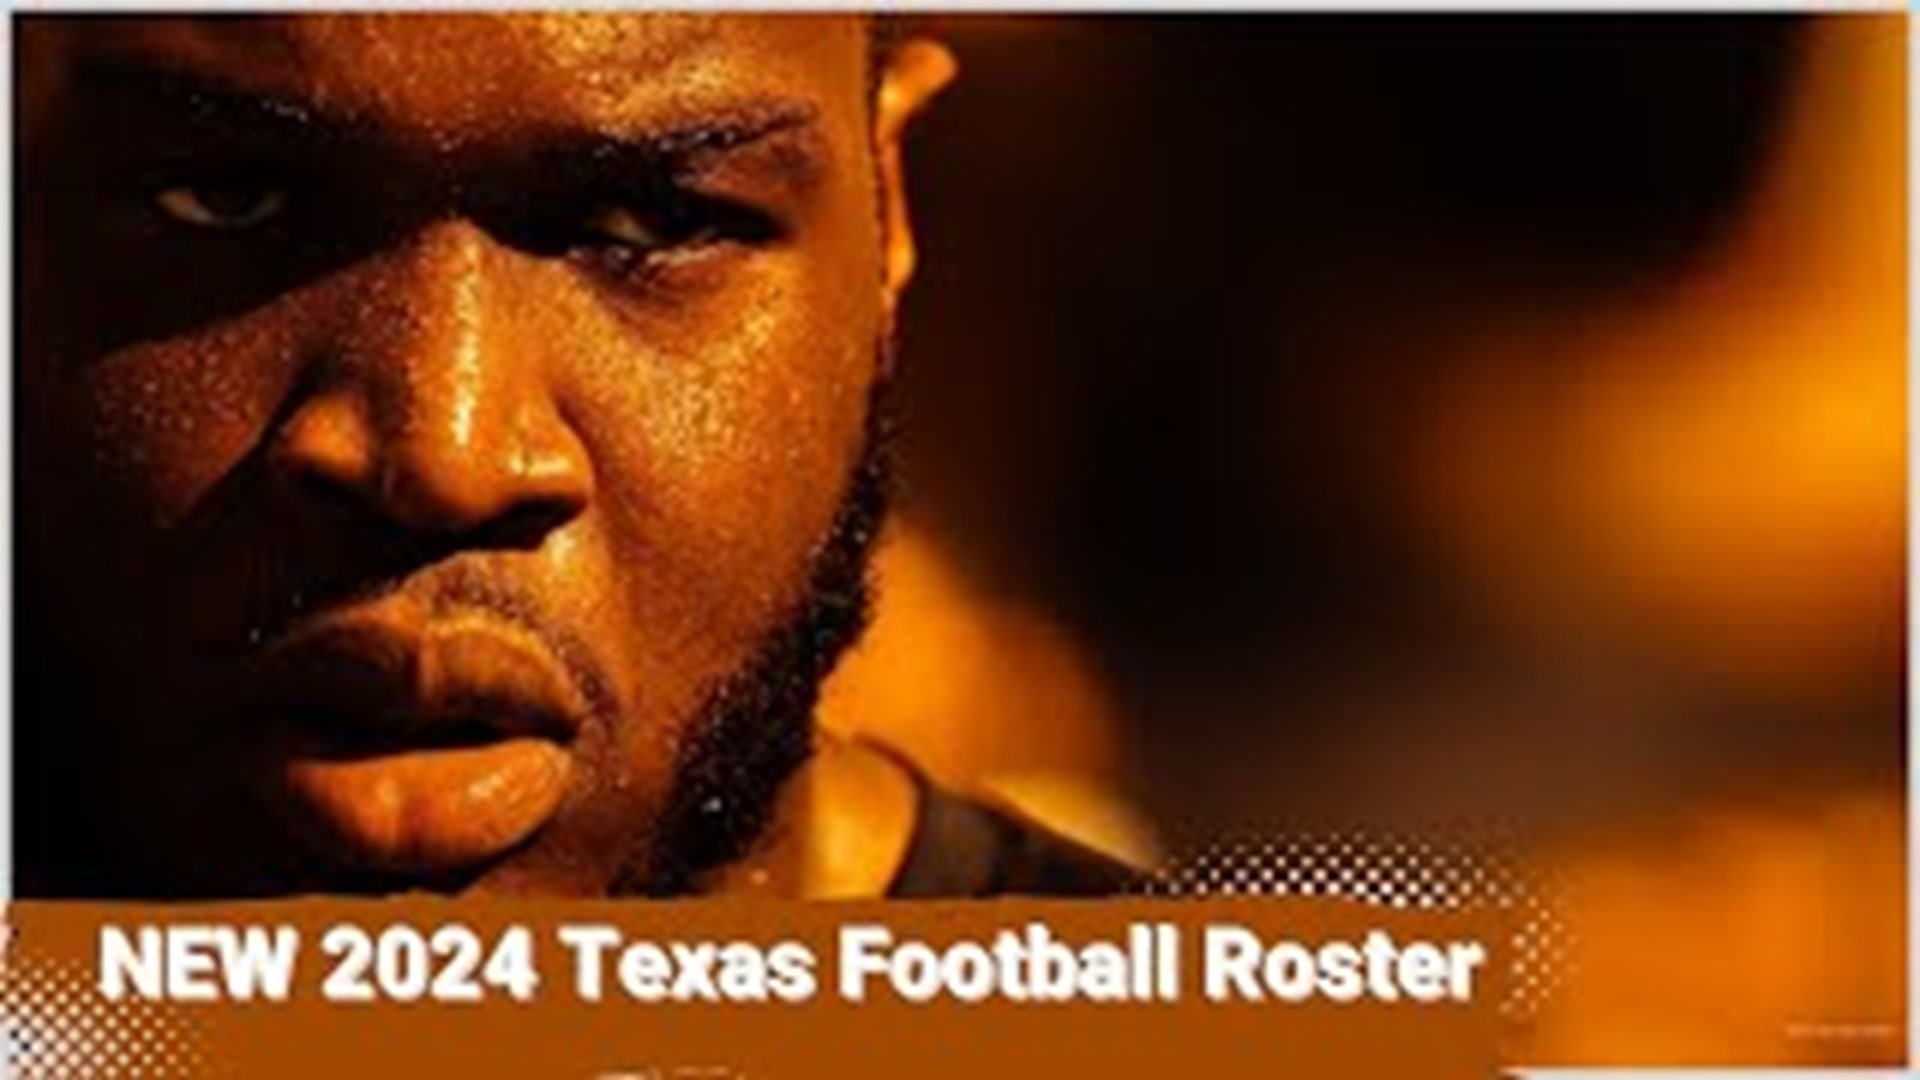 Texas Longhorns Football Team Reactions to the 2024 Texas Longhorns